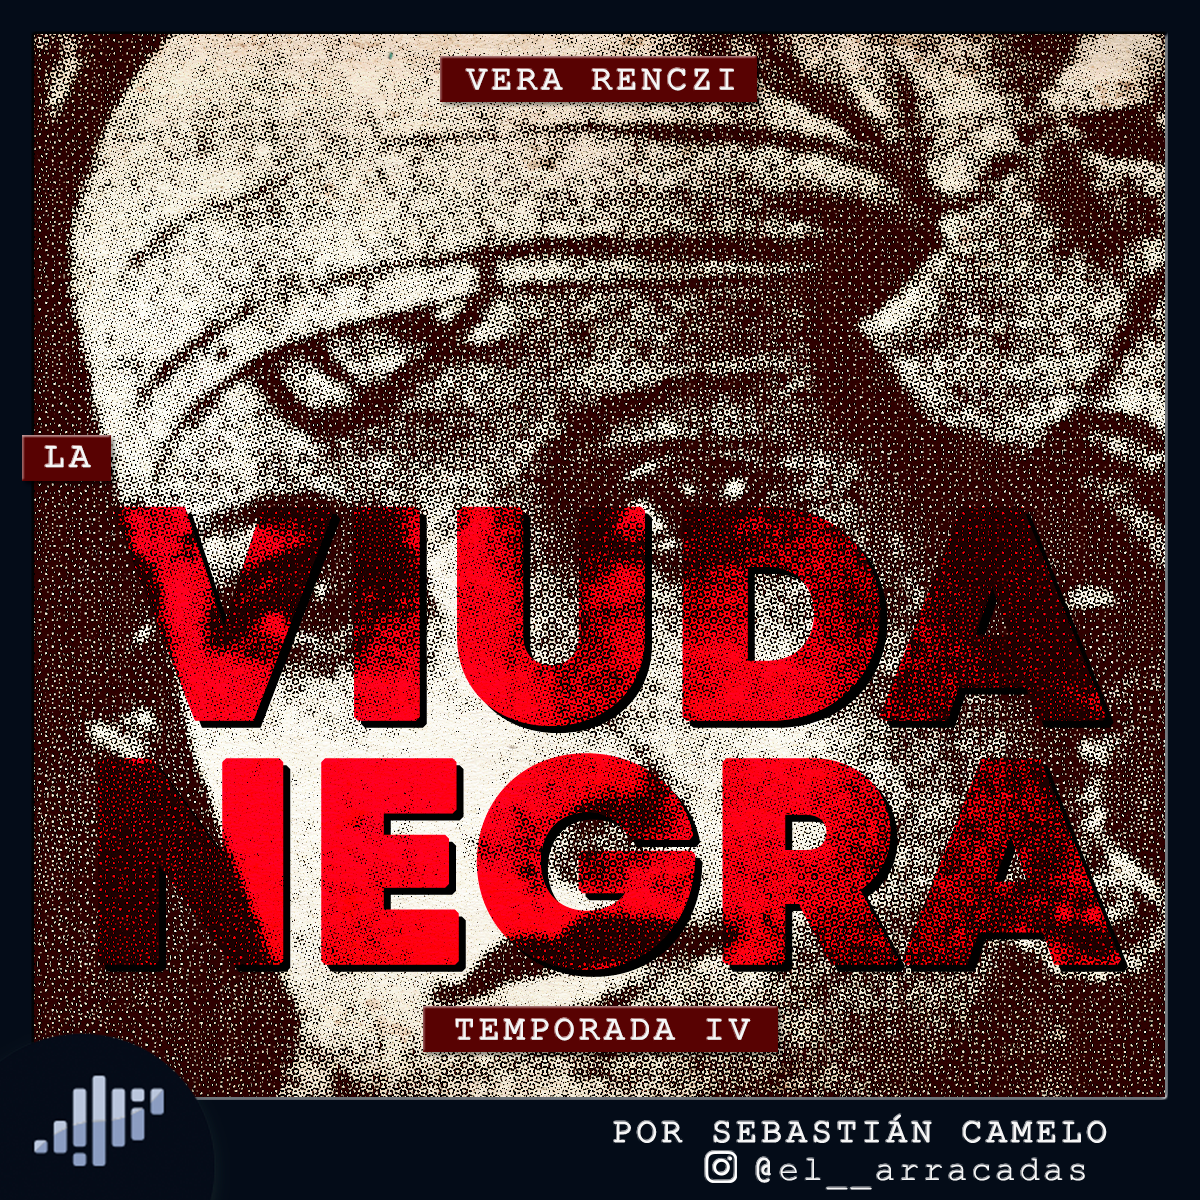 Serialmente: Vera Renczi | La Viuda Negra